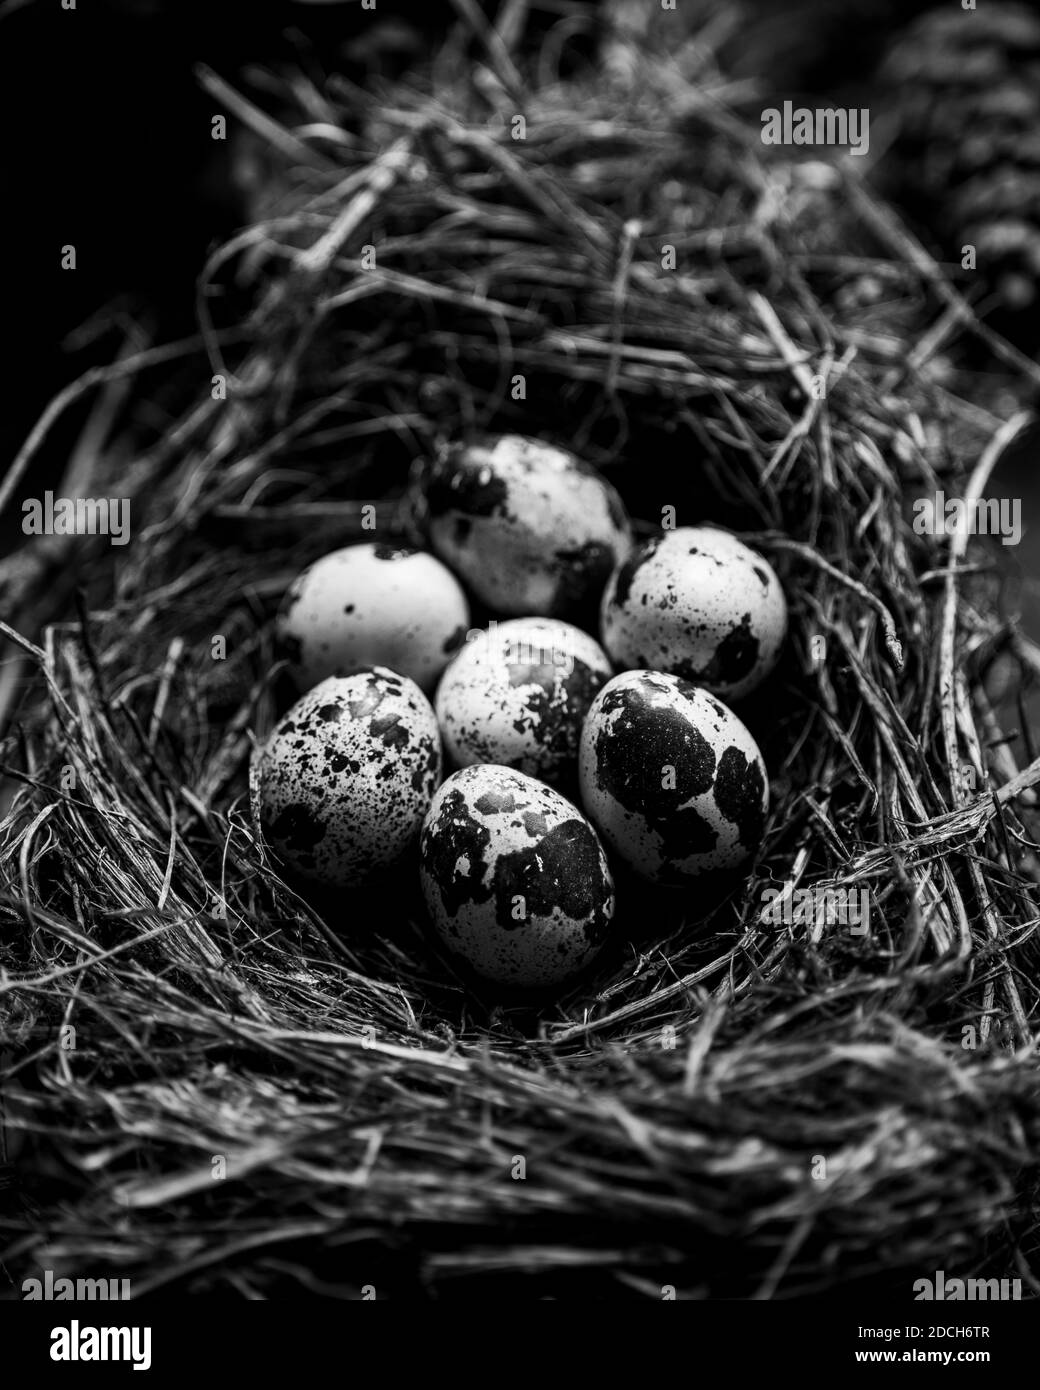 Eier von einer Wachtel in einer schale,rohe wachtel eier, black and white photograph of quail eggs in a Nest,Quails eggs in nest, Stock Photo